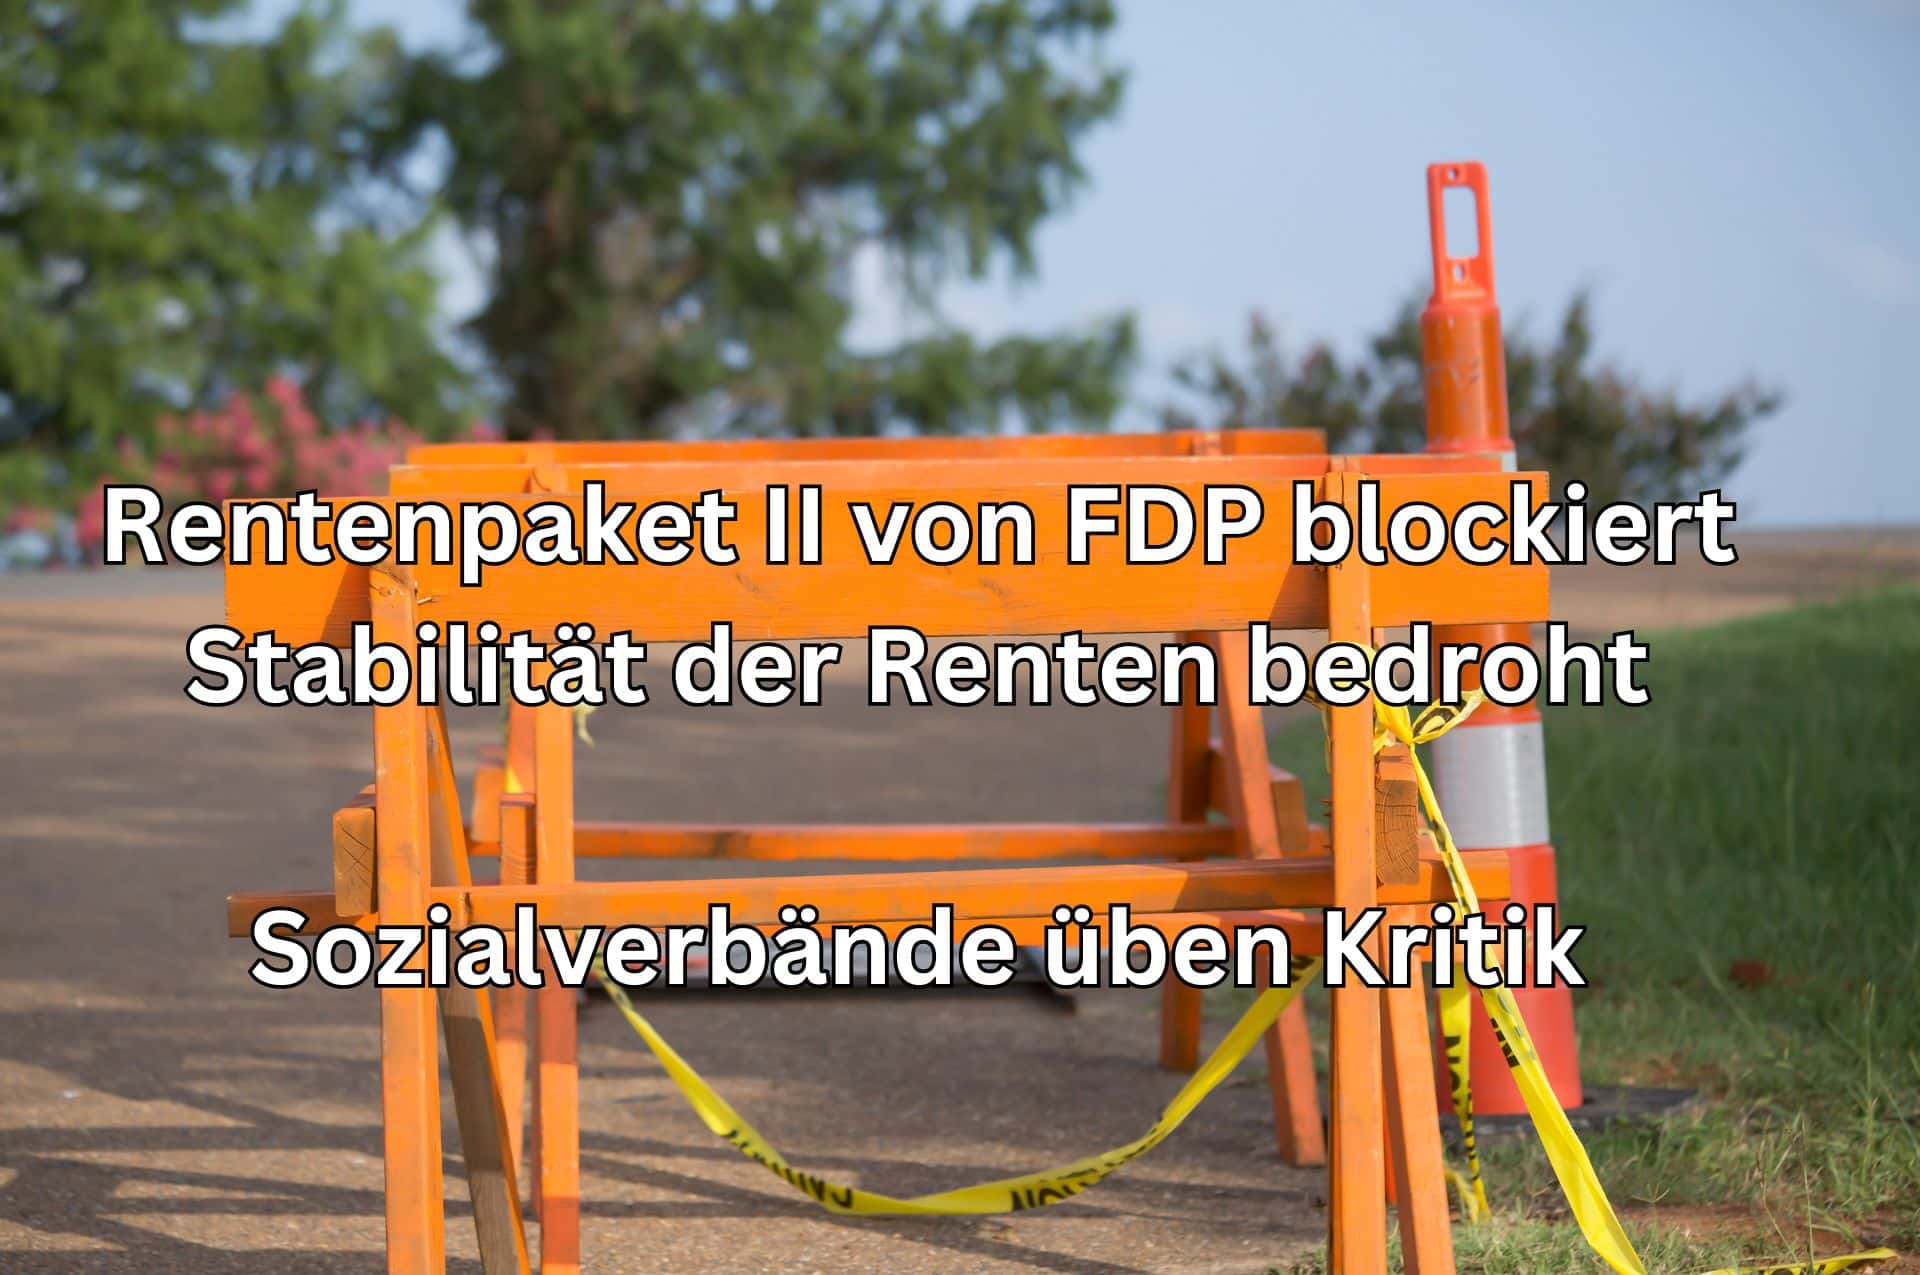 Rentenpaket von FDP blockiert – Sozialverbände protestieren!